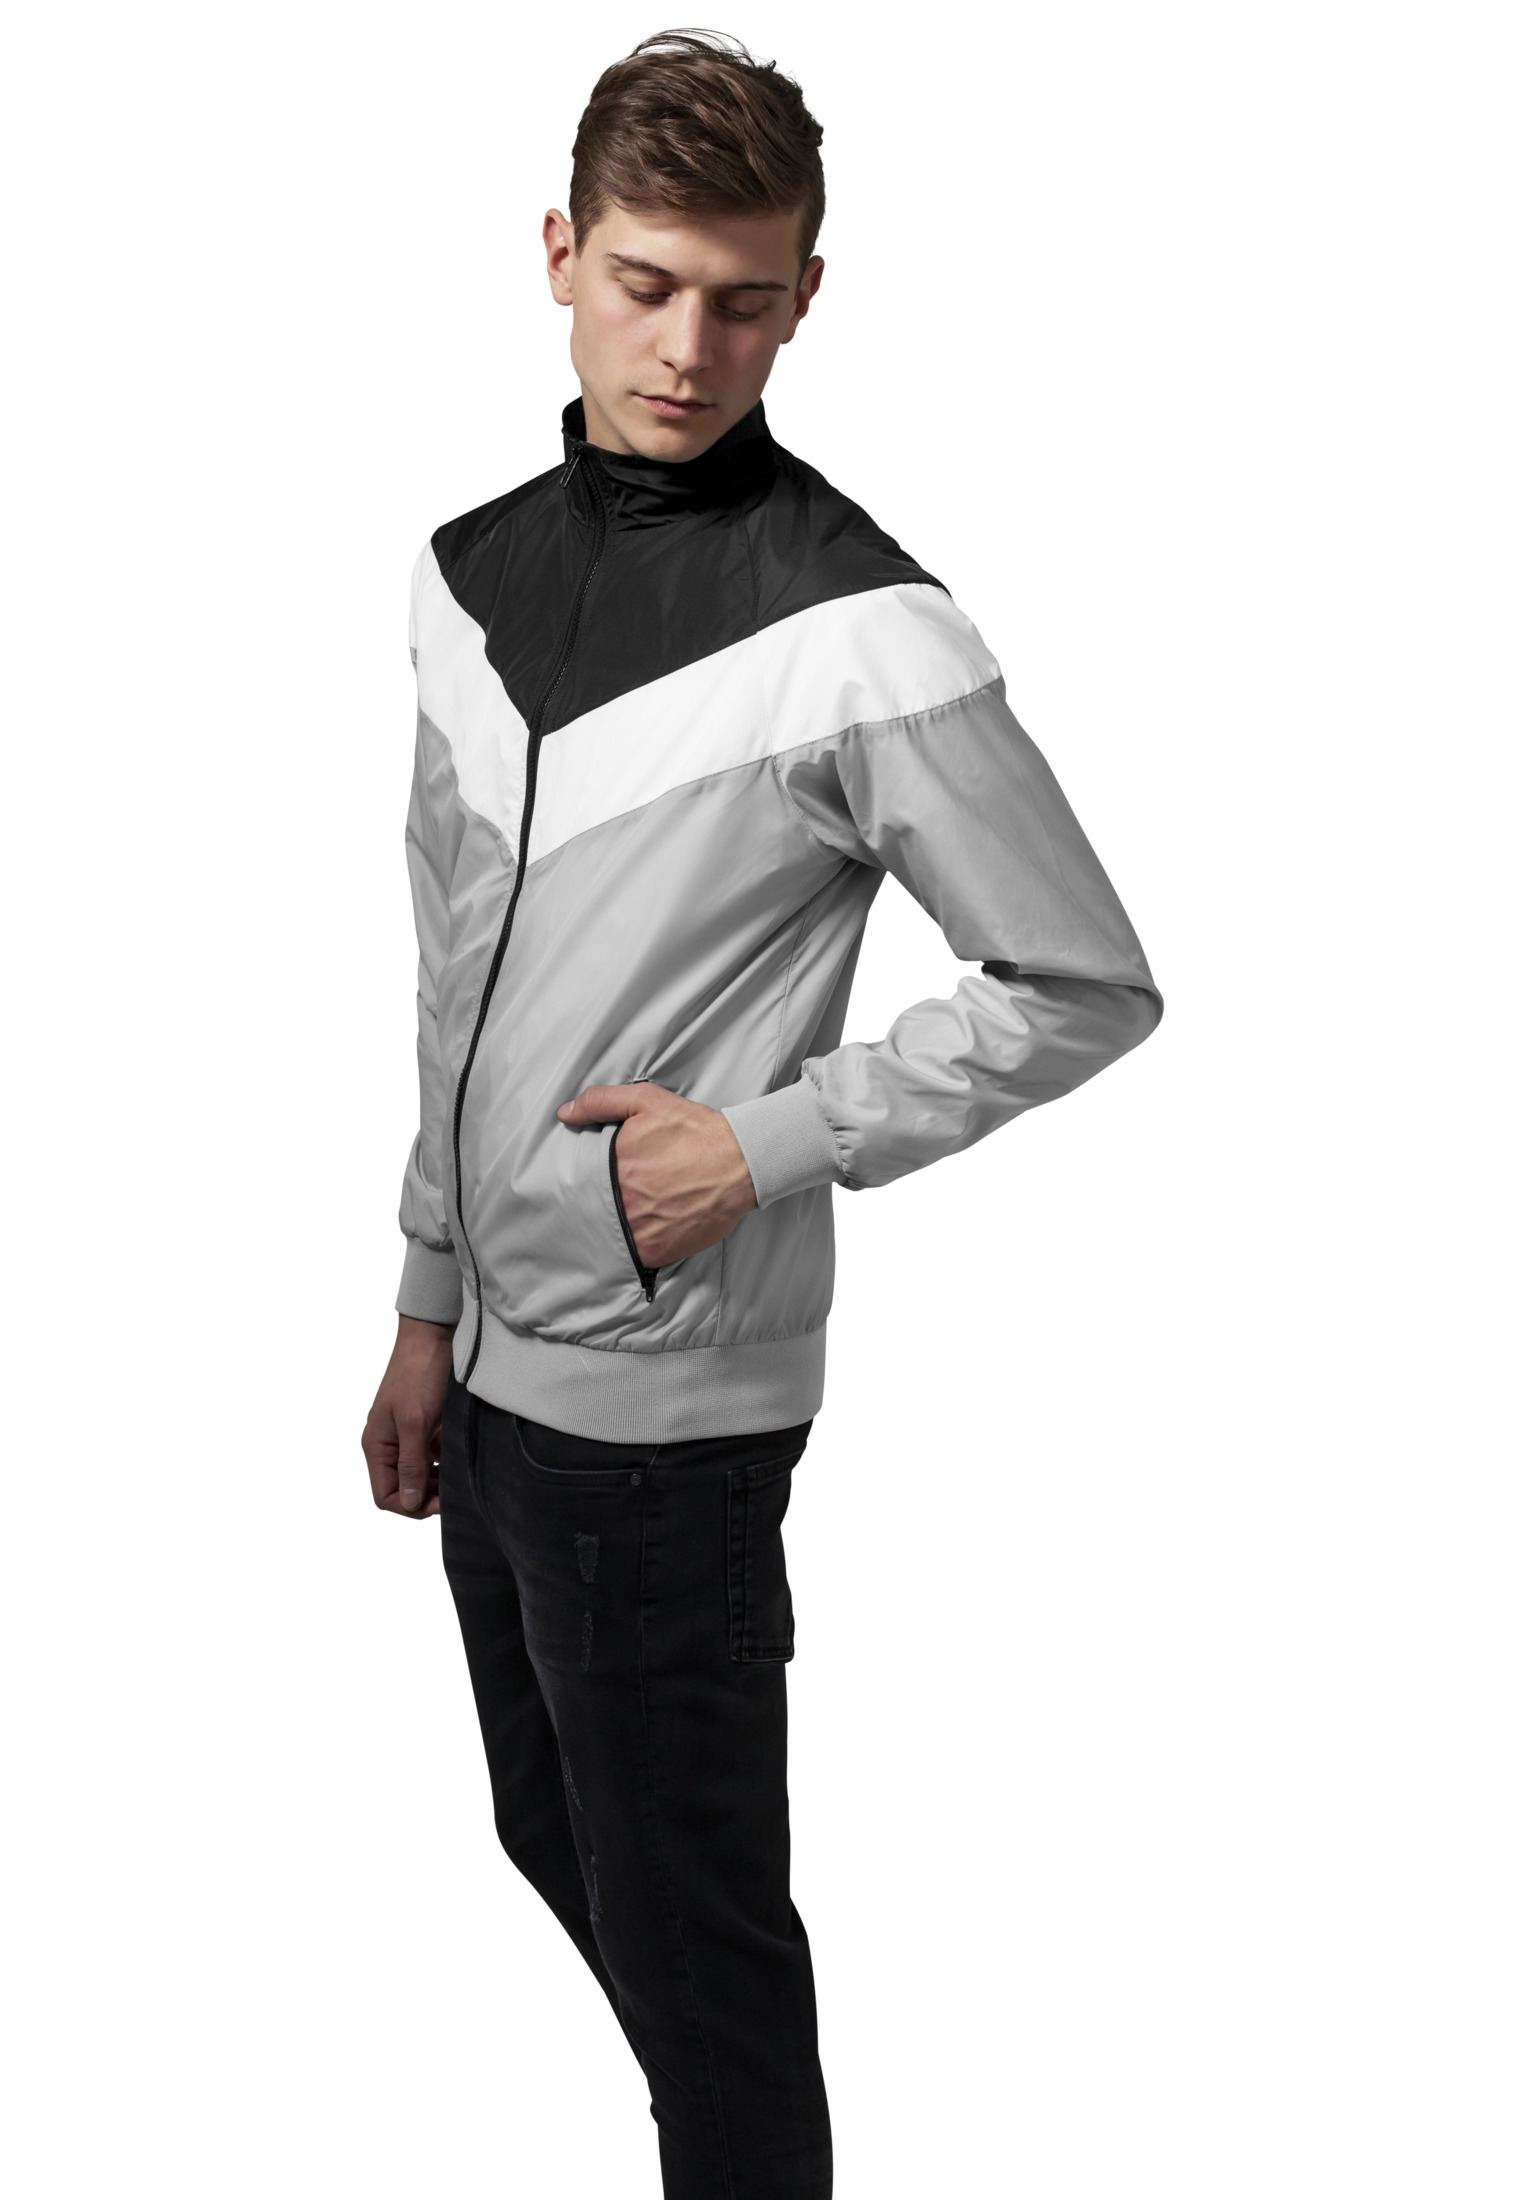 Leichte Jacken Arrow Zip Jacket in Farbe lightgrey/blk/wht